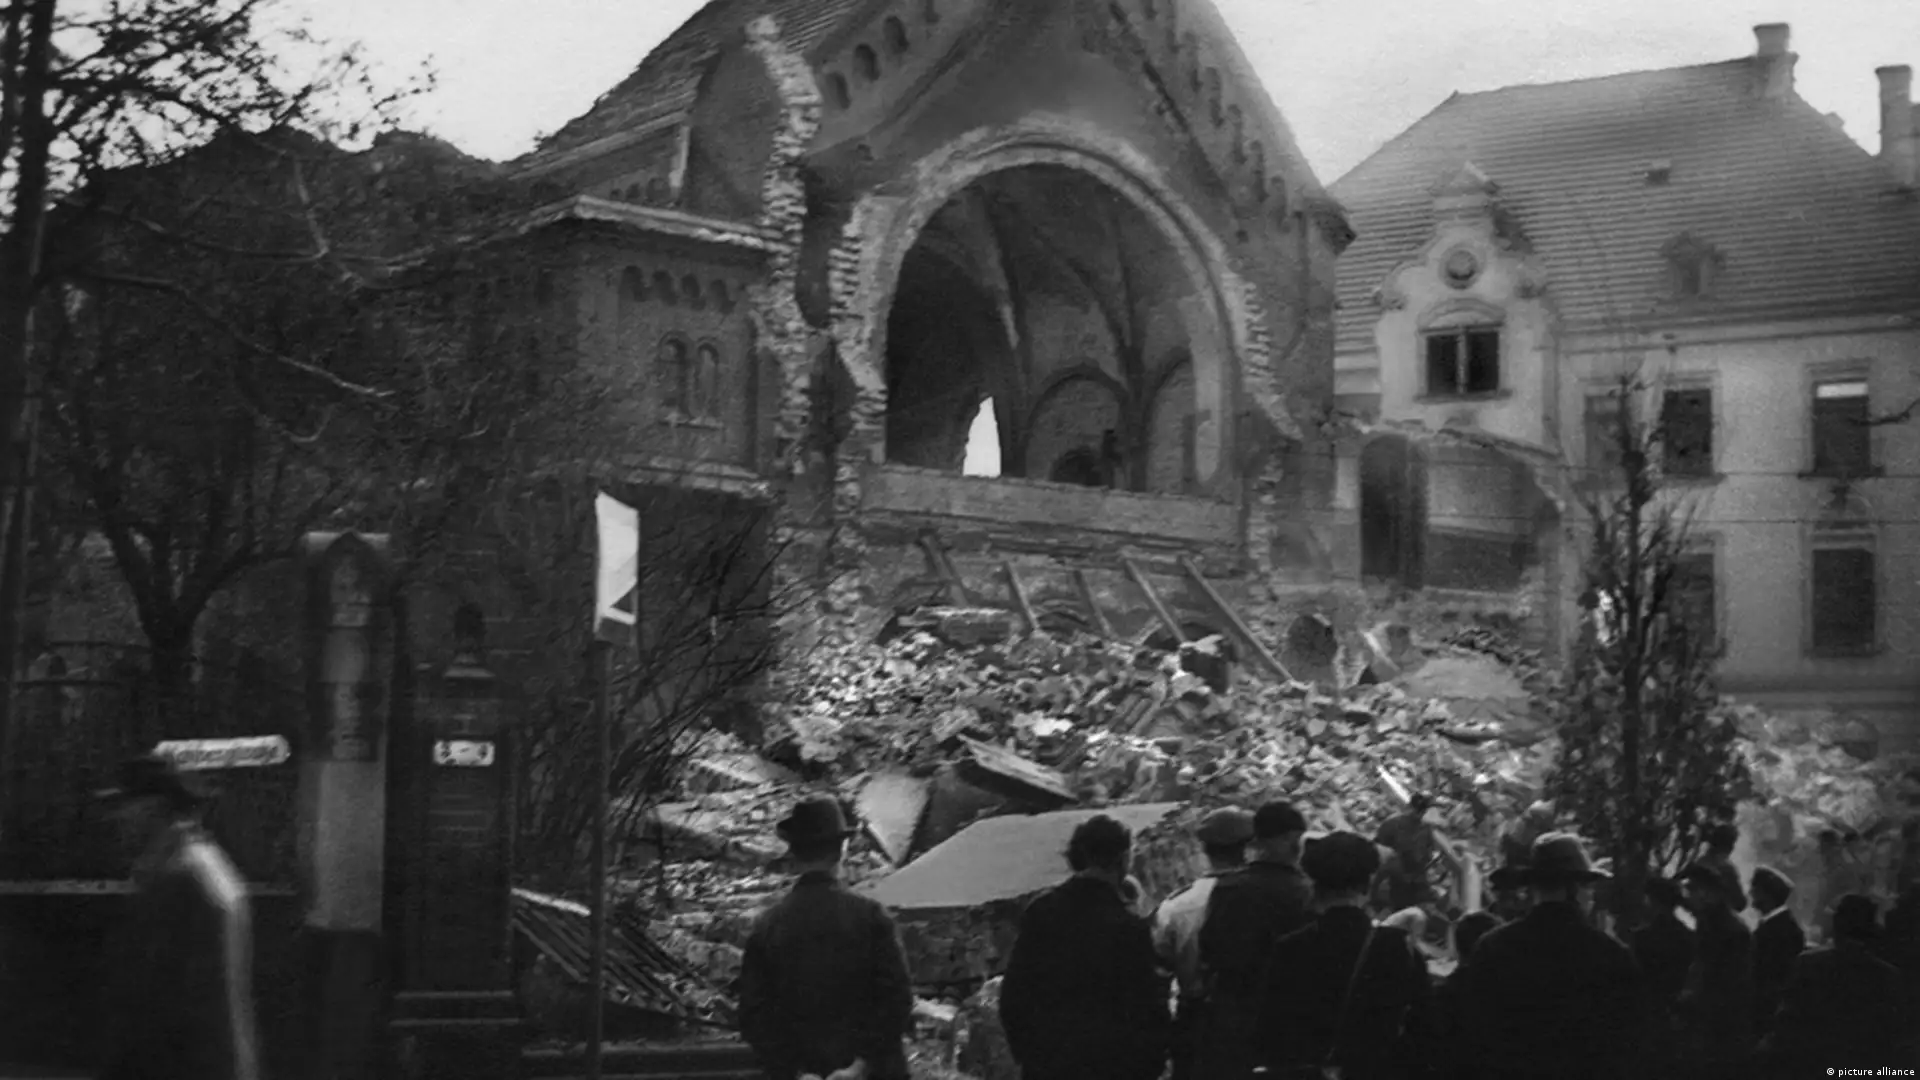 G1 > Mundo - NOTÍCIAS - Judeus recuperam maior sinagoga da Alemanha